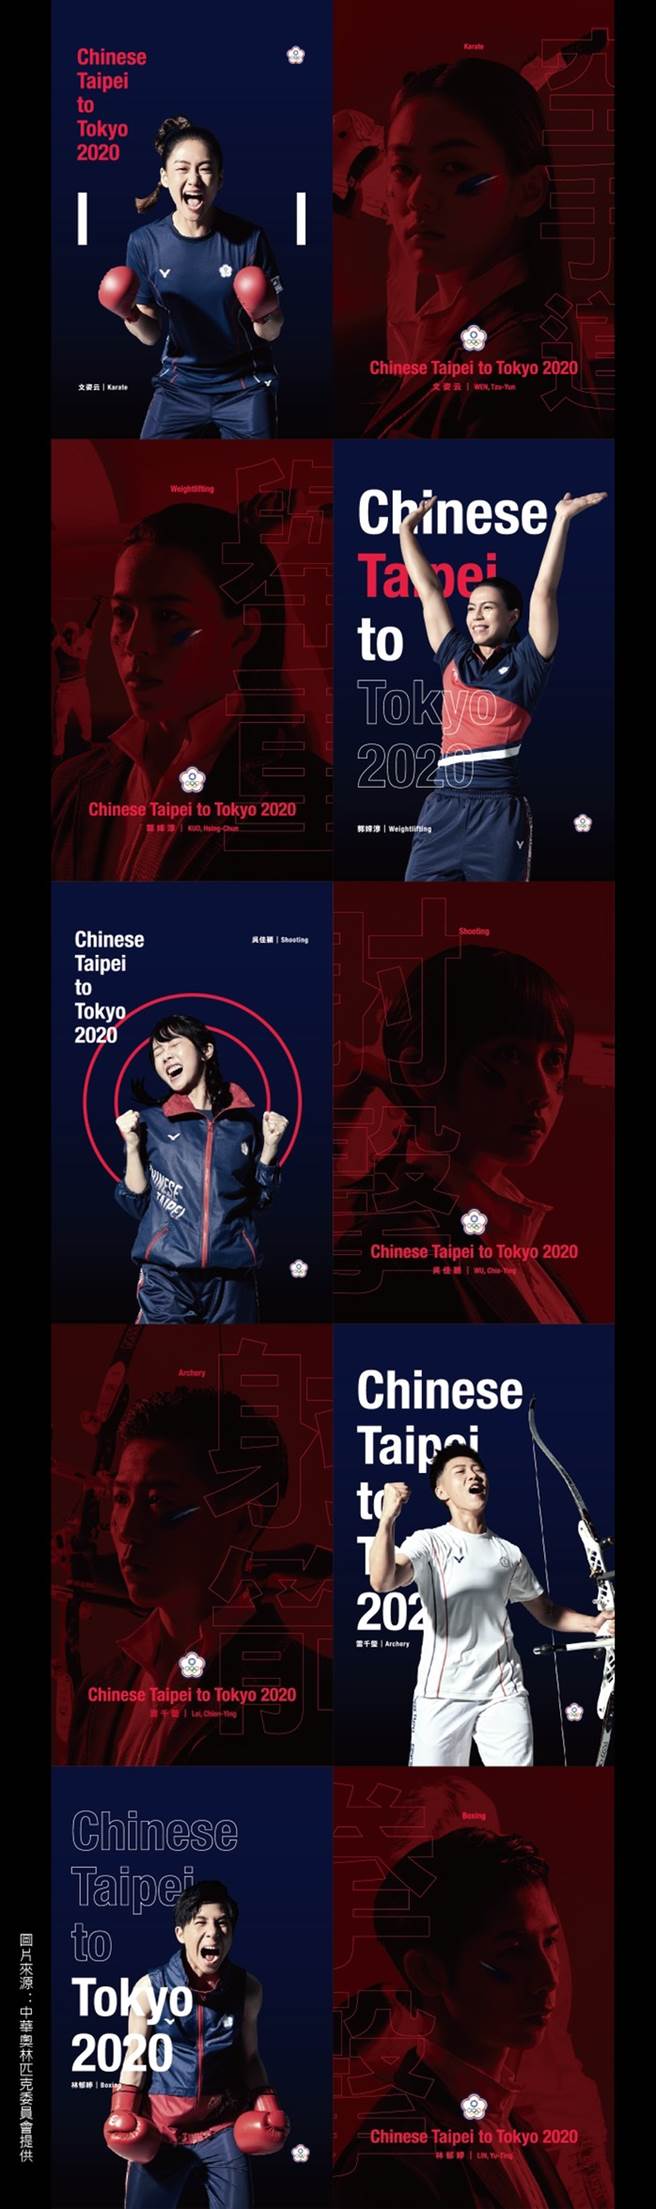 2020東京奧運中華隊女性代表選手形象照。(中華奧林匹克委員會／授權提供)